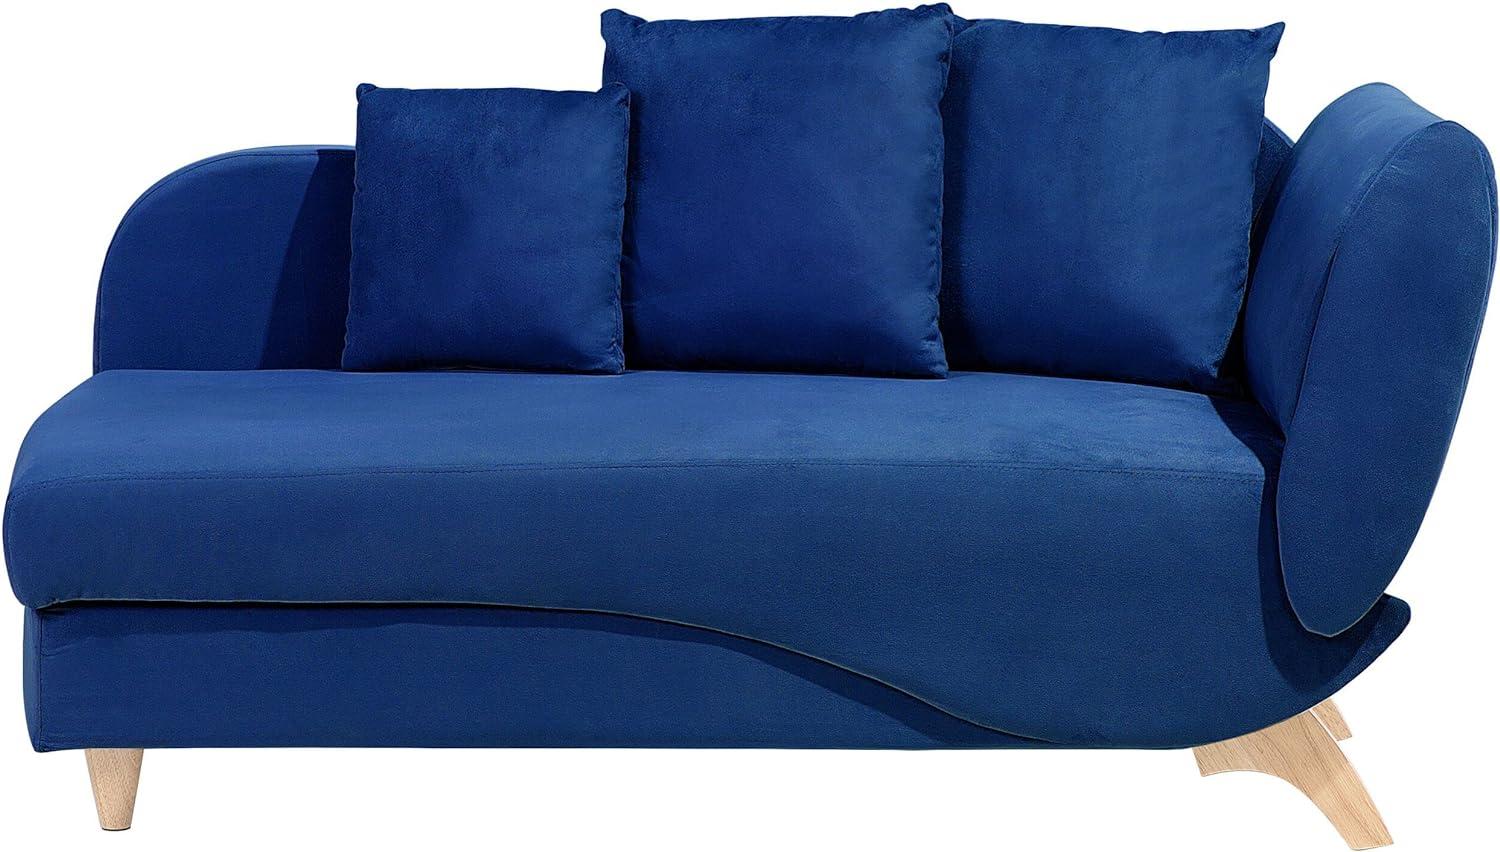 Chaiselongue Samtstoff dunkelblau mit Bettkasten rechtsseitig MERI Bild 1